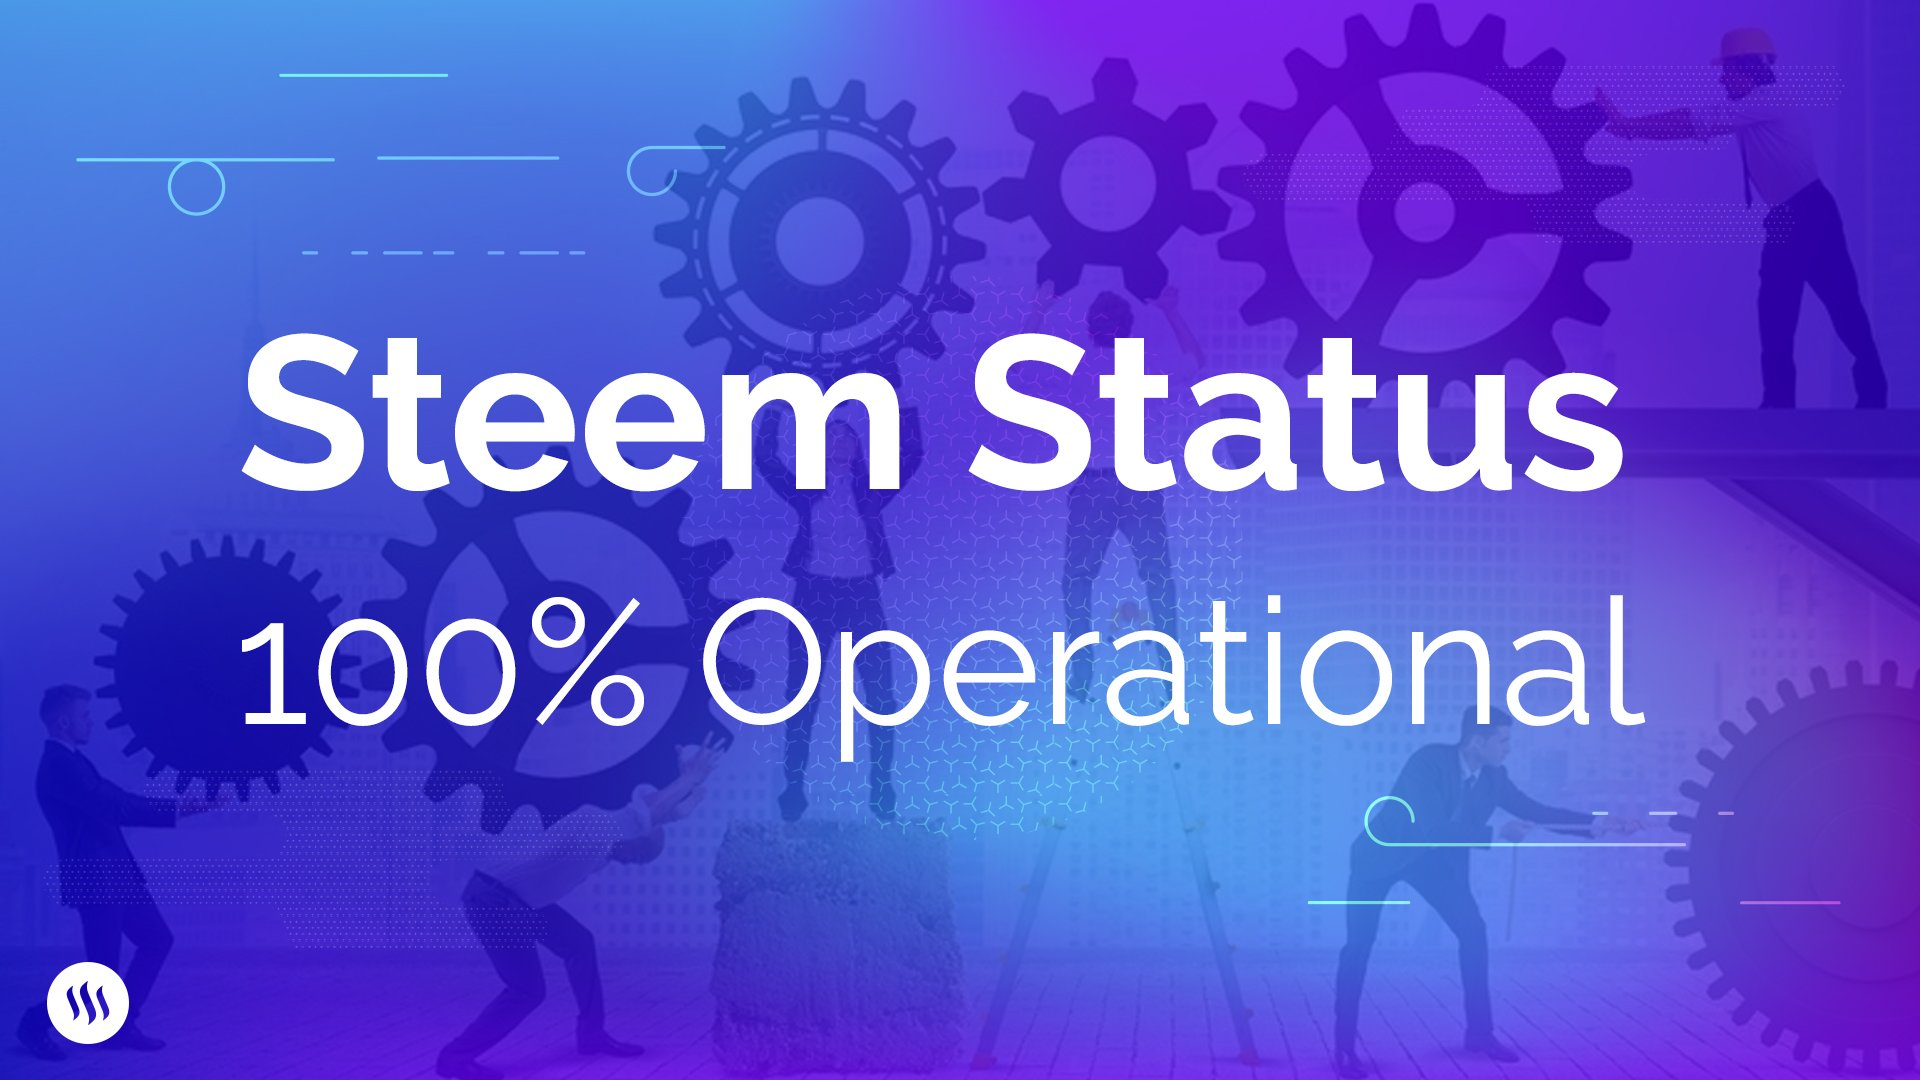 非正式翻译：STEEM彻底康复啦/ Informal translation of "Steem Status: 100% Operational "